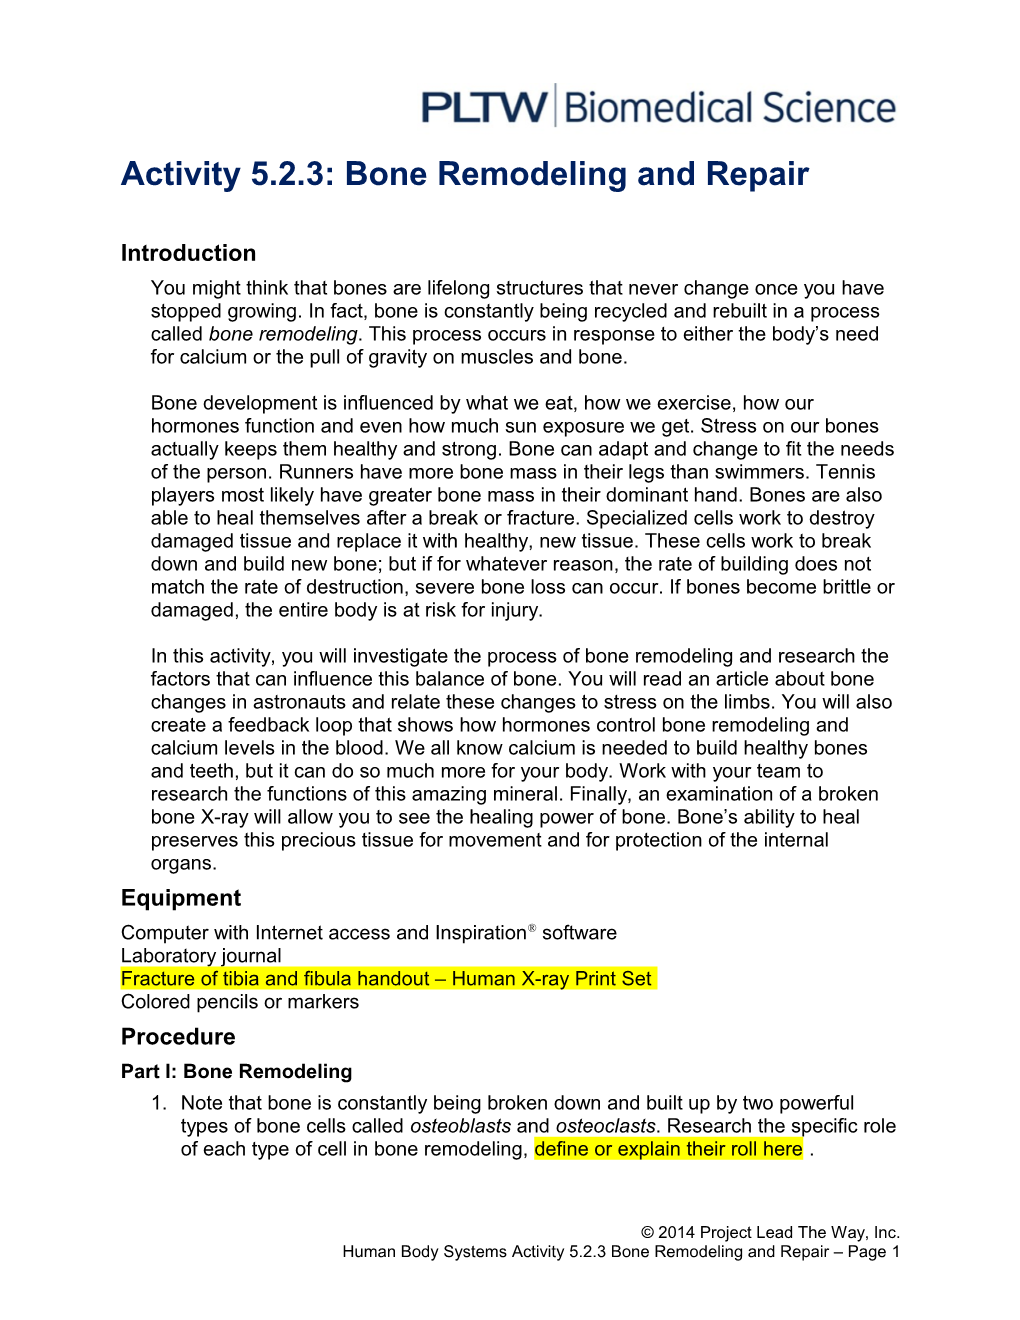 Activity 5.2.3: Bone Remodeling and Repair